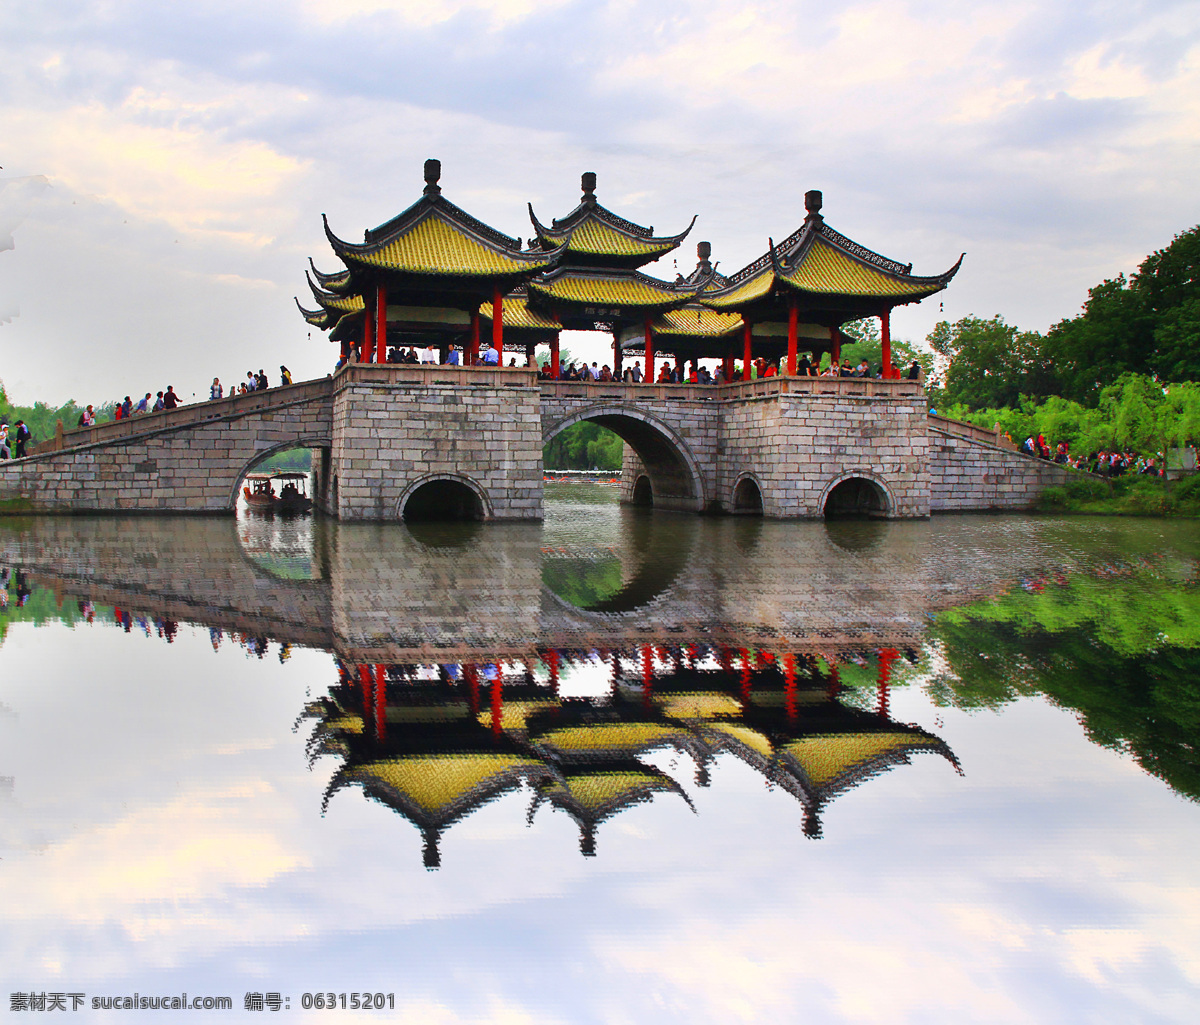 江苏杨州 瘦西湖 五亭桥 桥梁建筑 古桥 园林风景 旅游摄影 人文景观